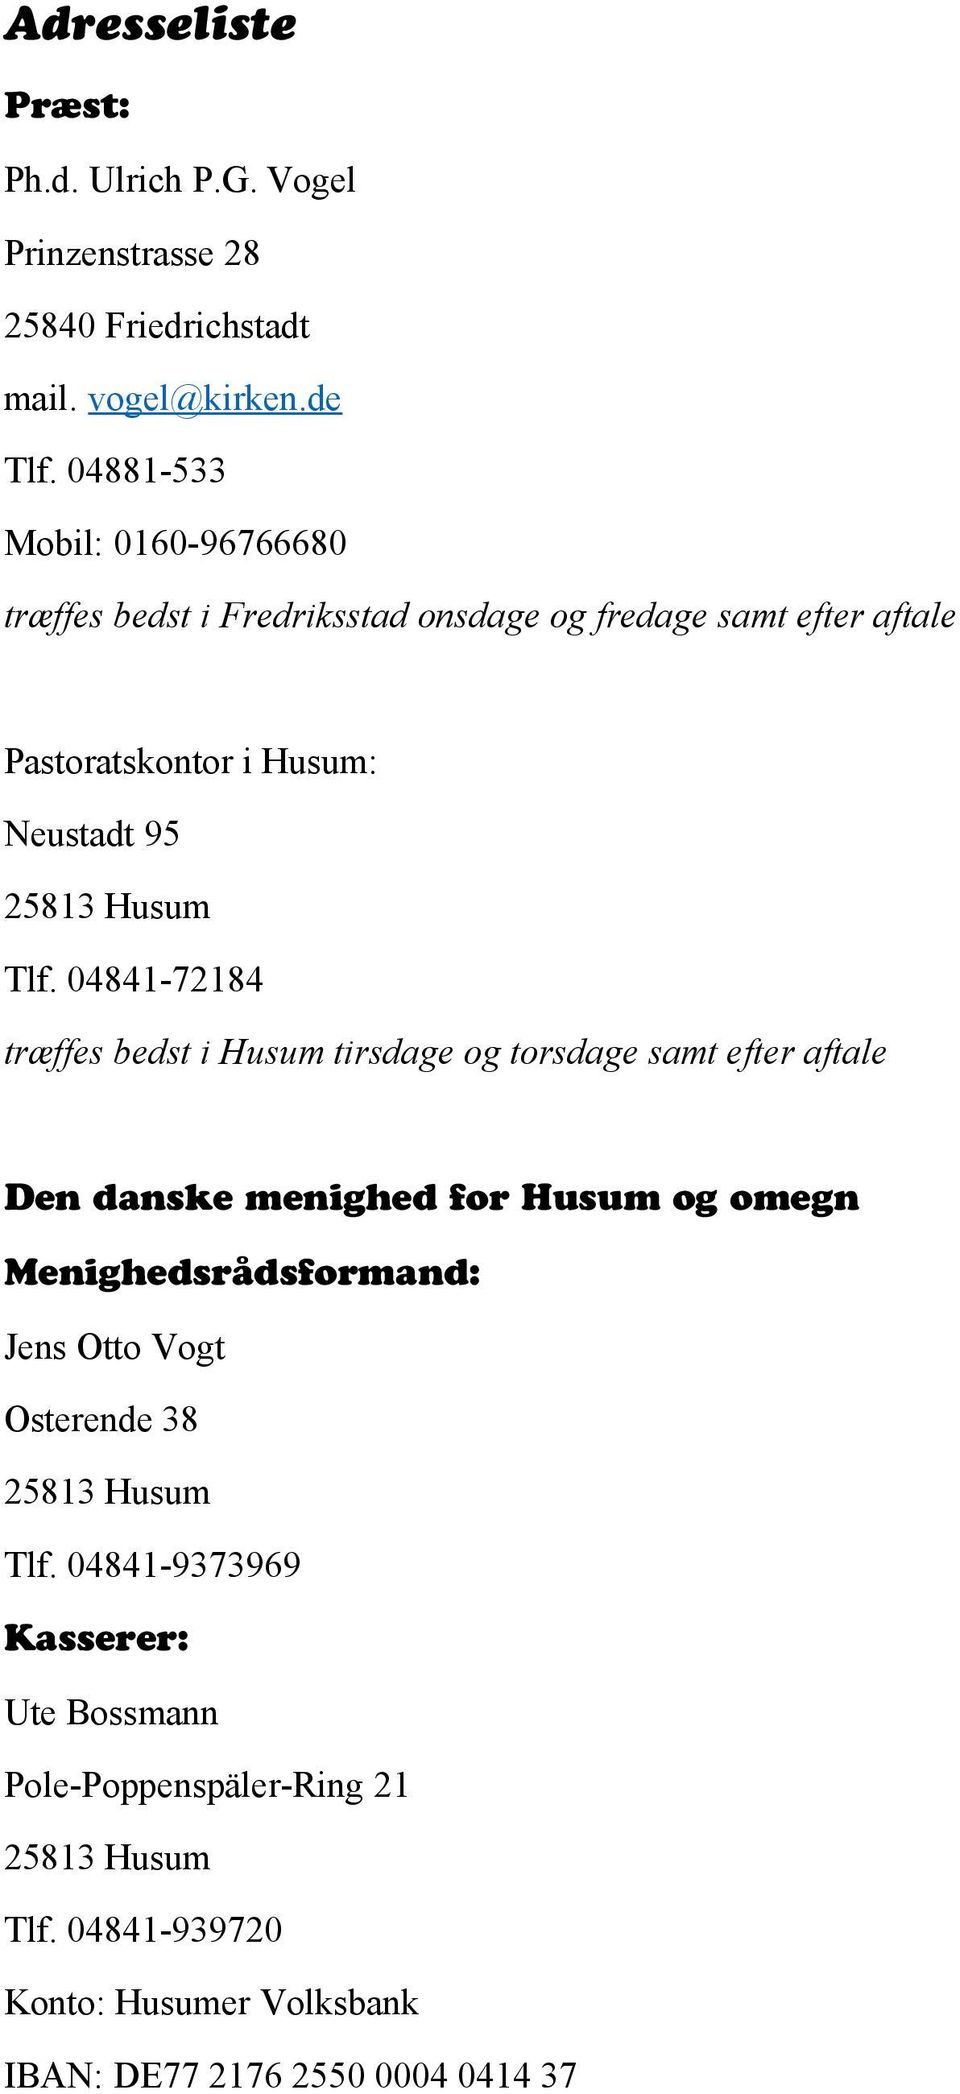 Tlf. 04841-72184 træffes bedst i Husum tirsdage og torsdage samt efter aftale Den danske menighed for Husum og omegn Menighedsrådsformand: Jens